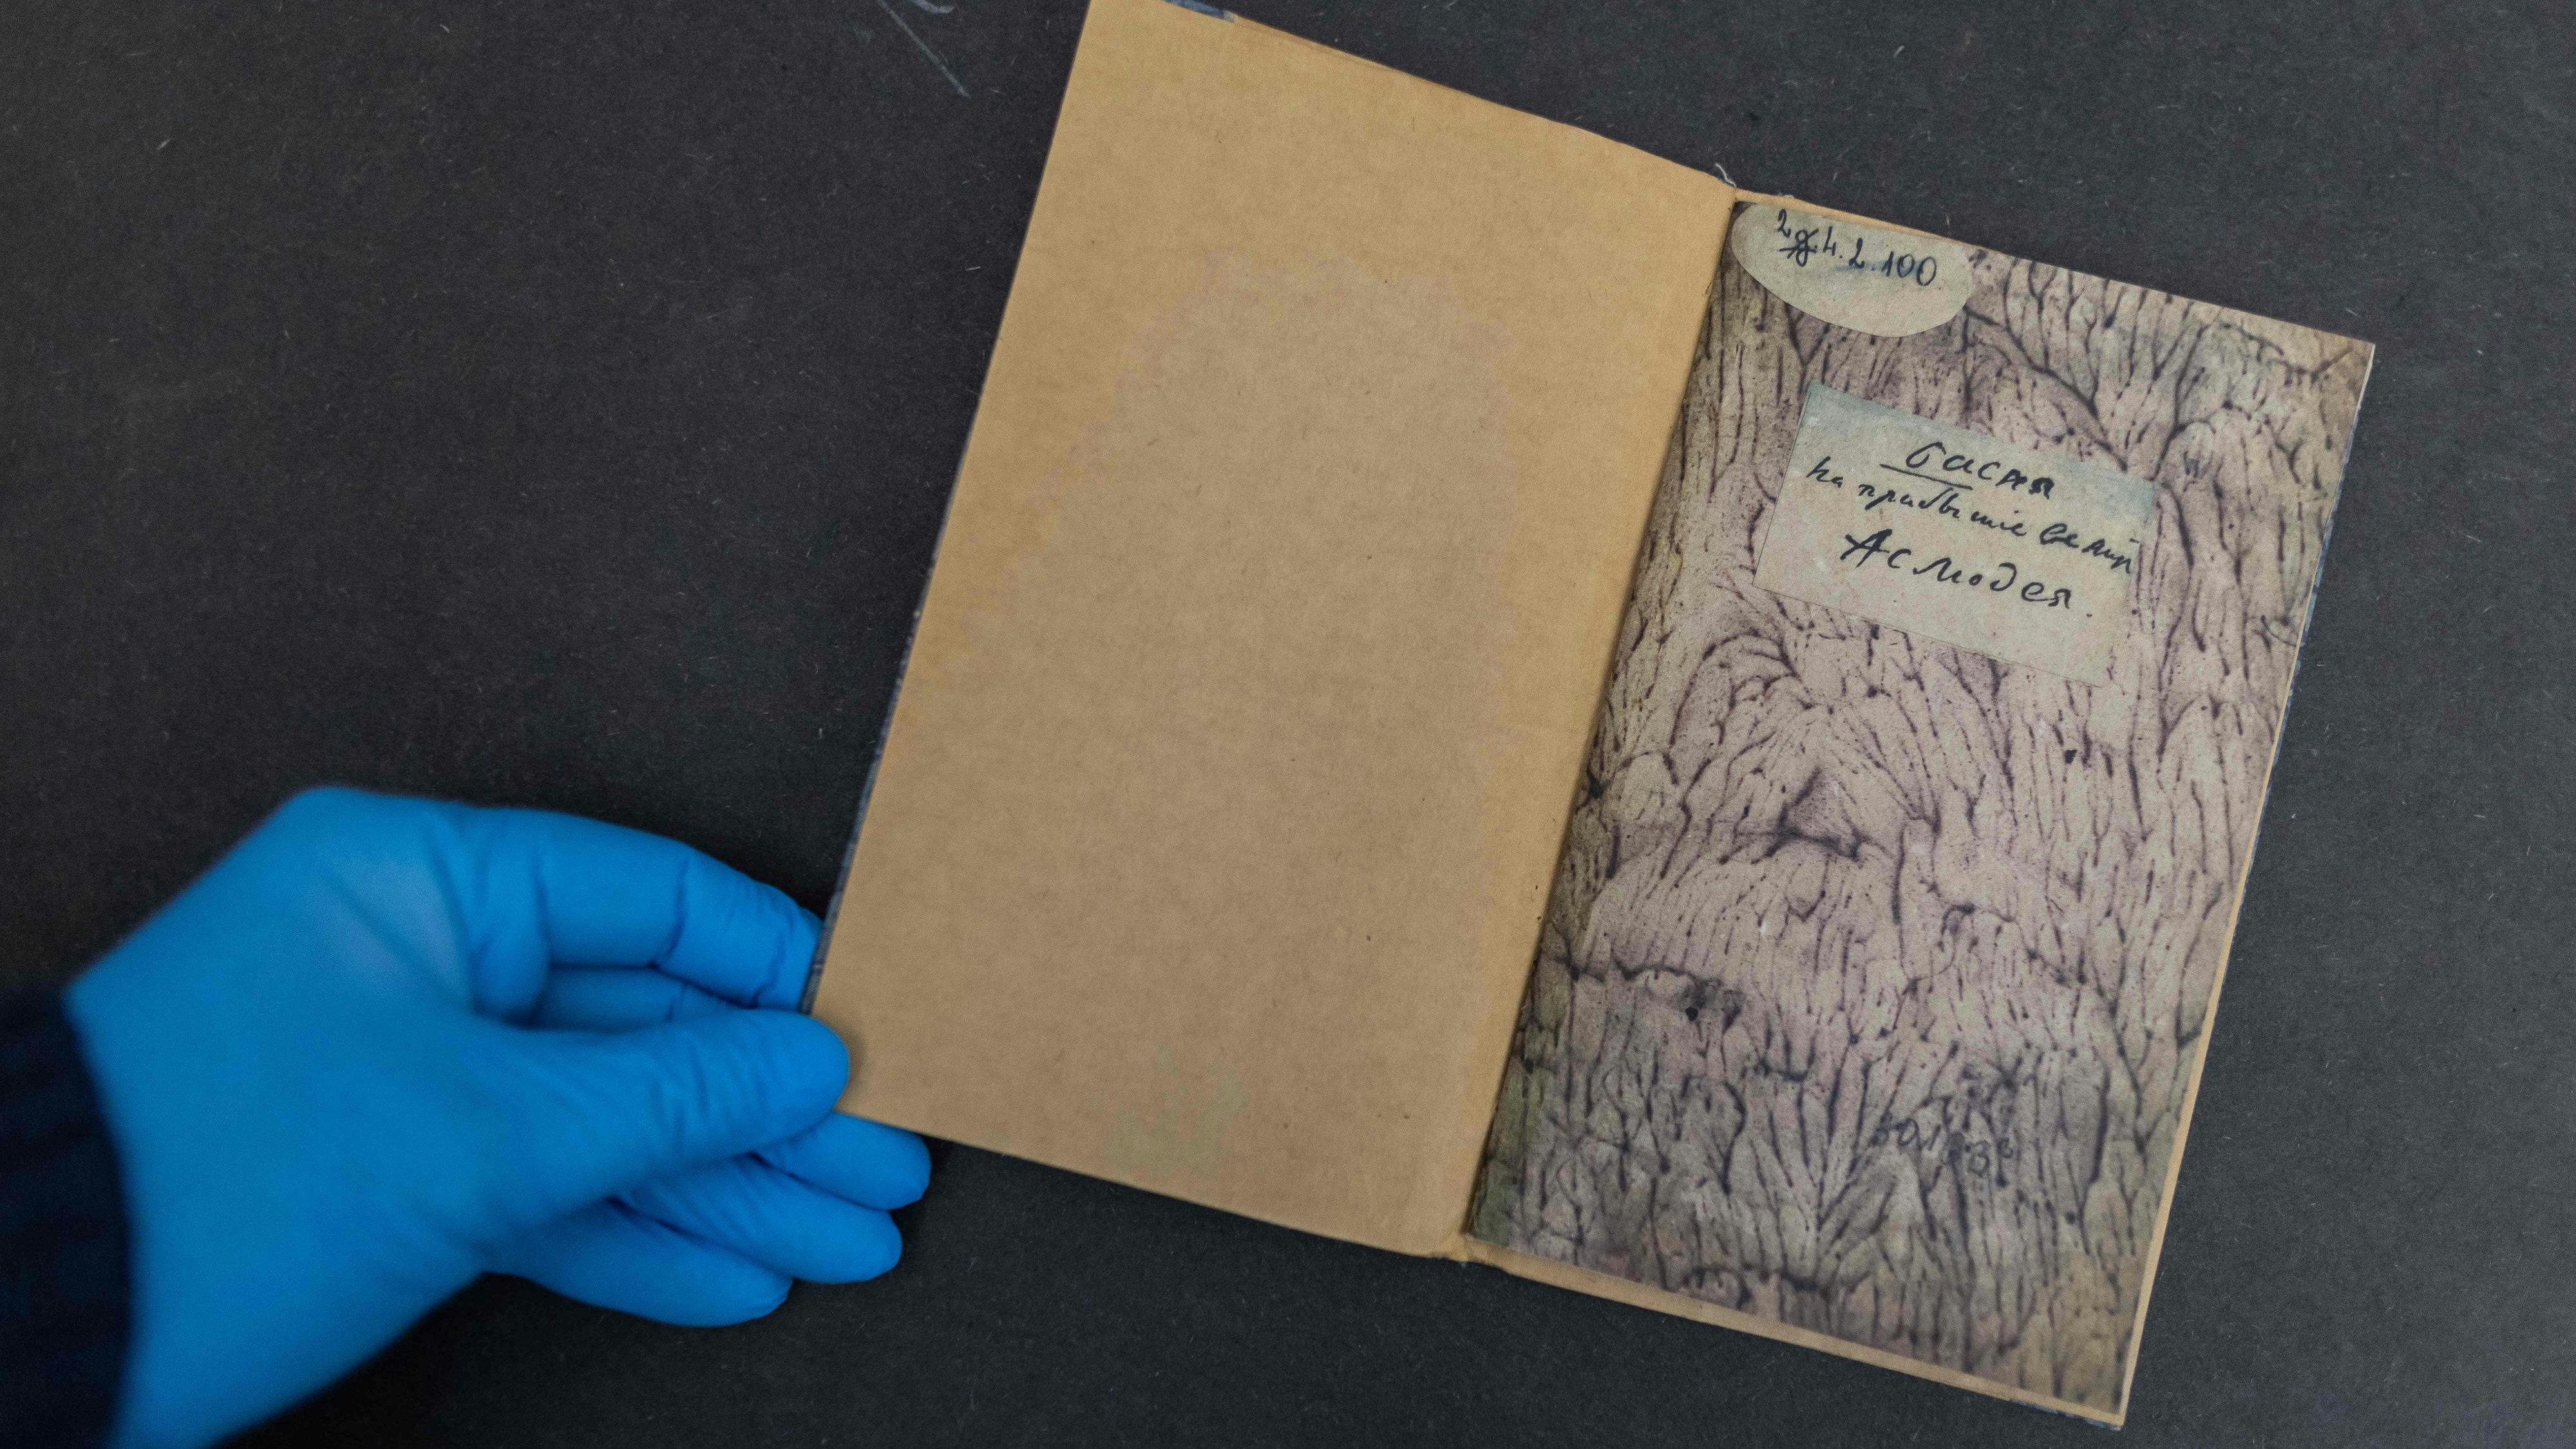 Kopie eines Buches aus dem Jahr 1813, das aus der Warschauer Universitätsbibliothek gestohlen wurde. SOgar die Stockflecken auf den Seiten wurden von den Dieben kopiert